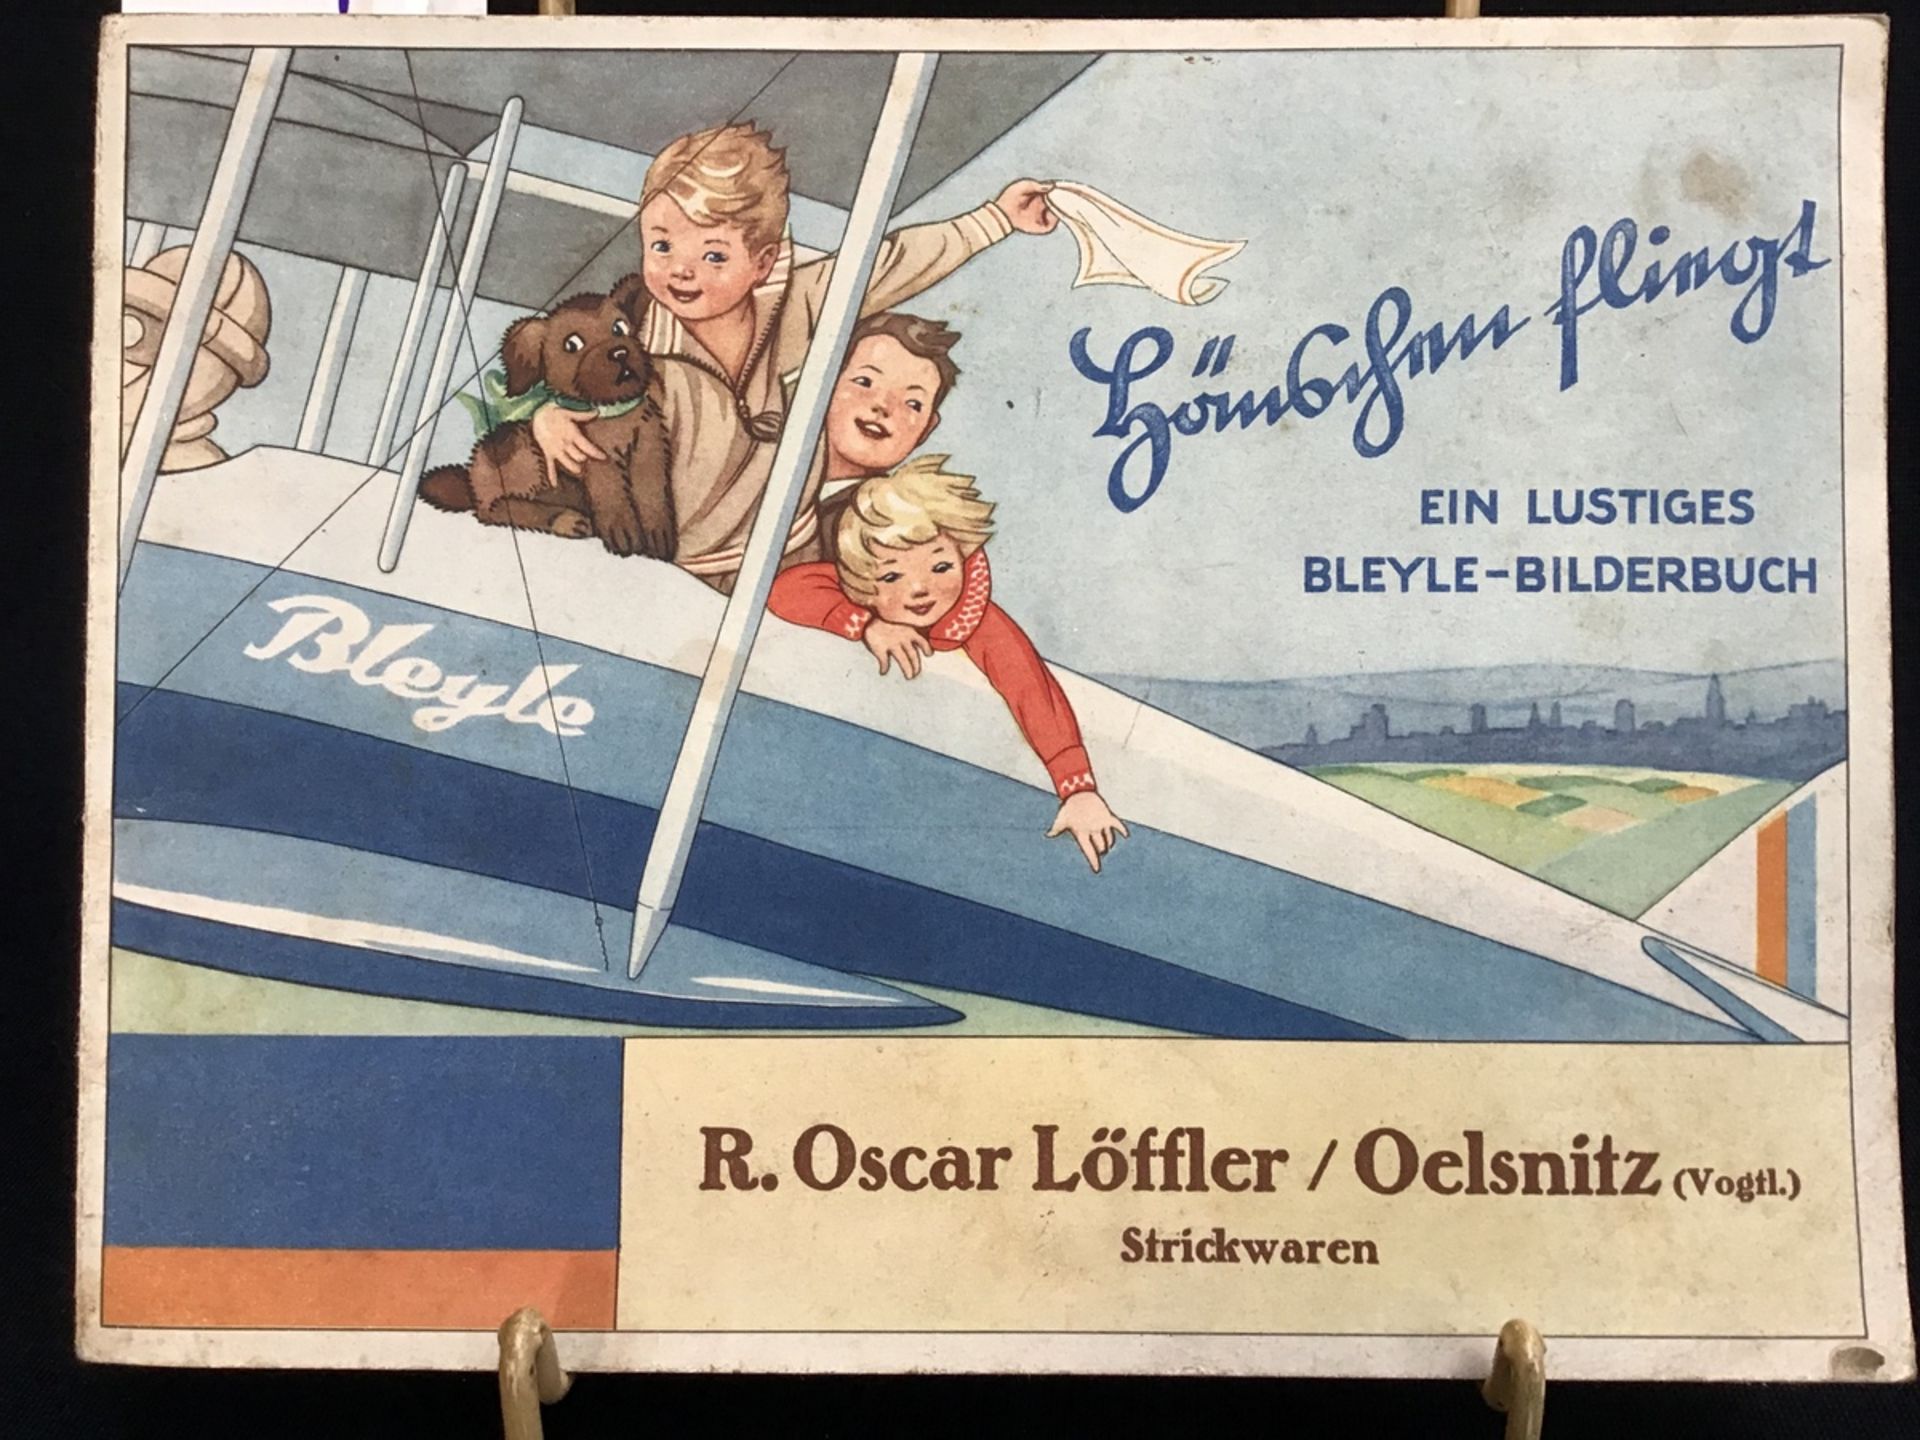 ""Hänschen fliegt" ein lustiges Bleyle-Bilderbuch, 1930 Bleyle Stuttgart, Werbung überreicht von R.